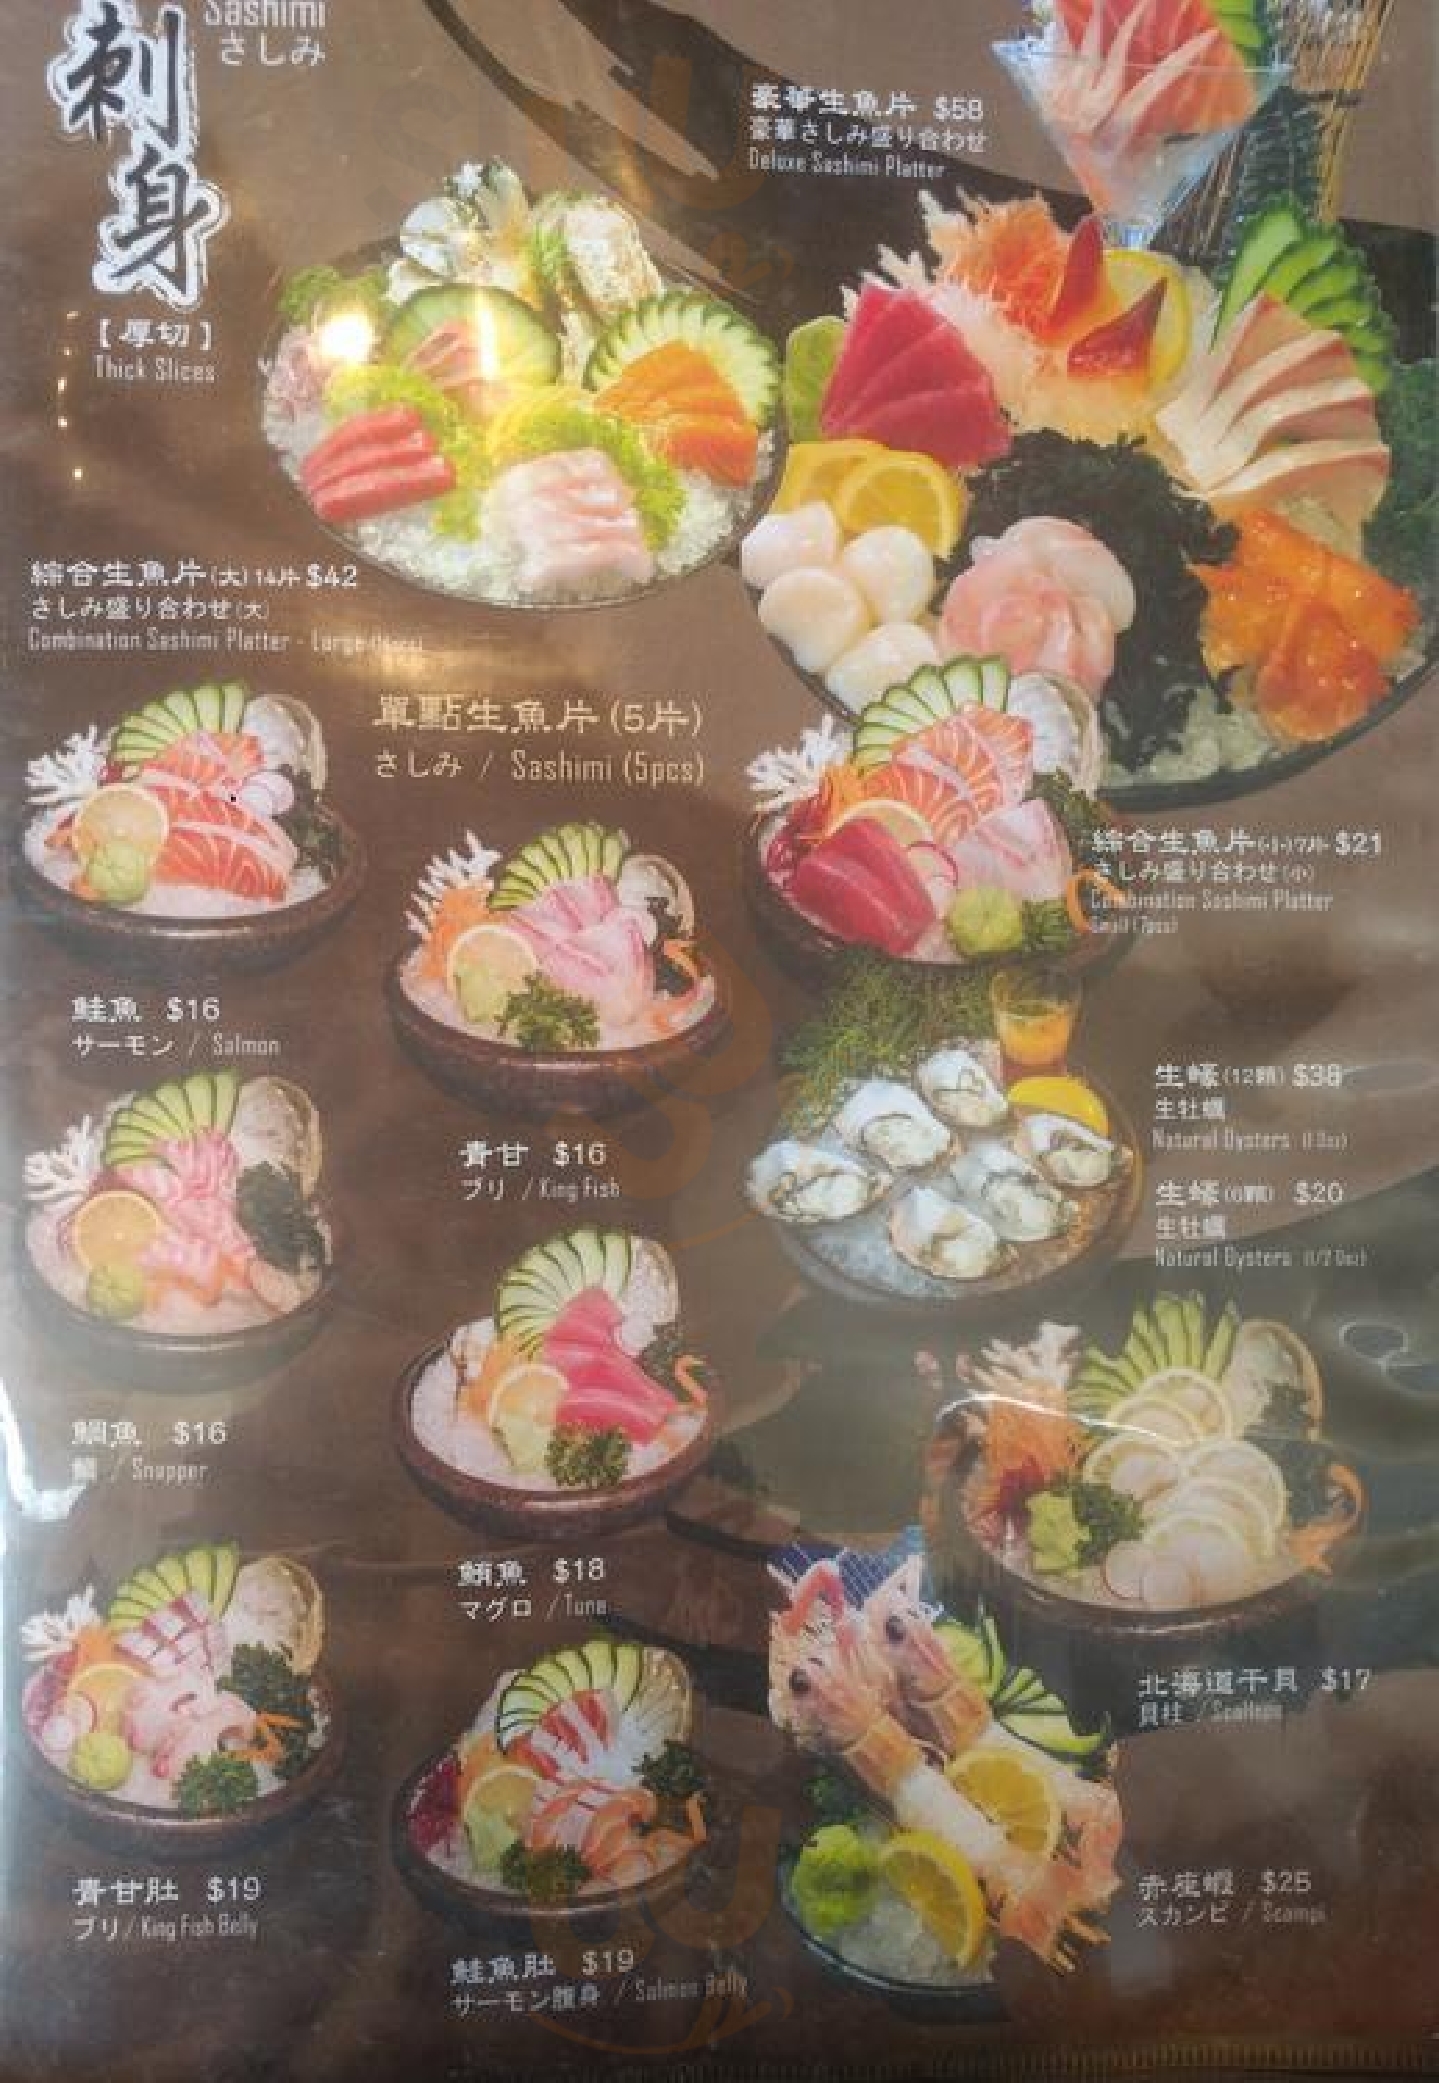 Sushi Hana Zushi Flower Nicholls Menu - 1